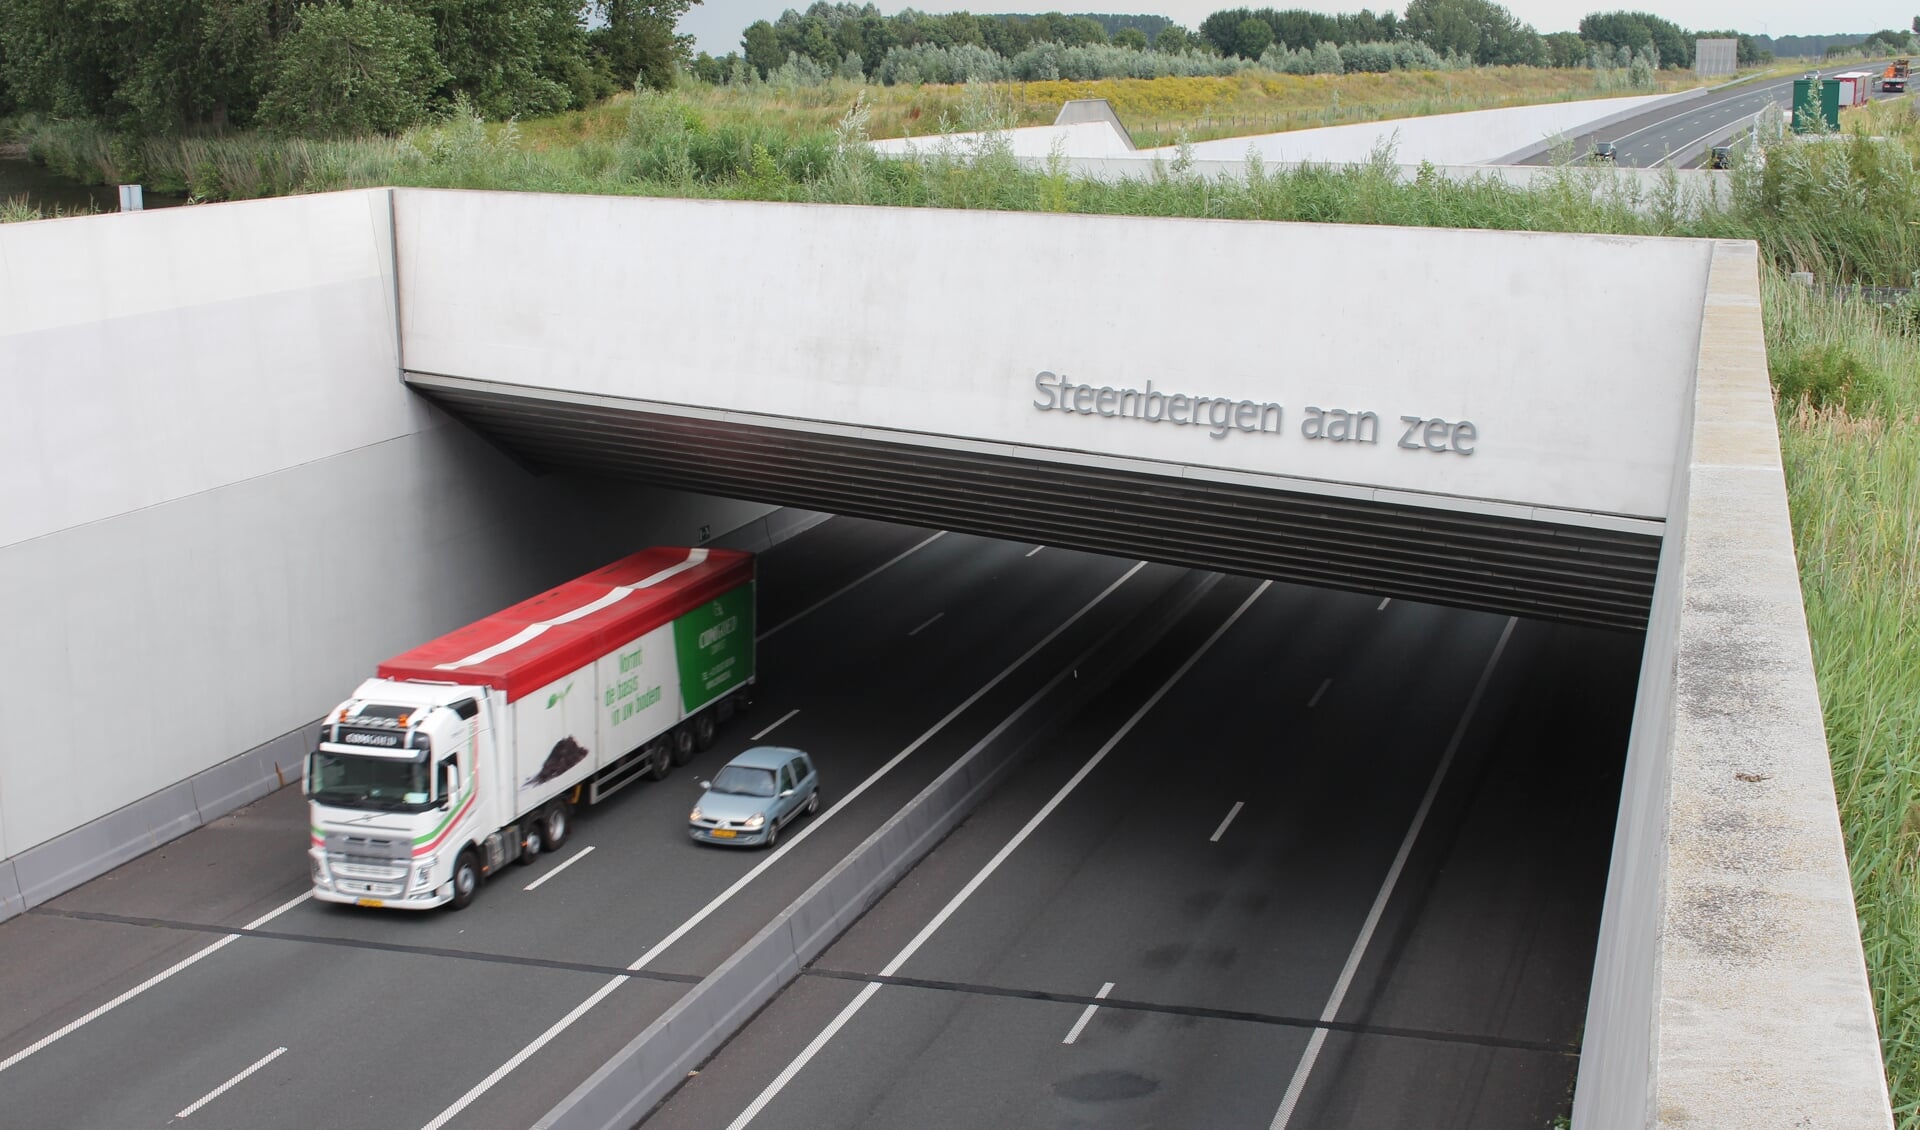 2019 kent een toename aan ongelukken op het A4 traject Dinteloord-Bergen op Zoom.